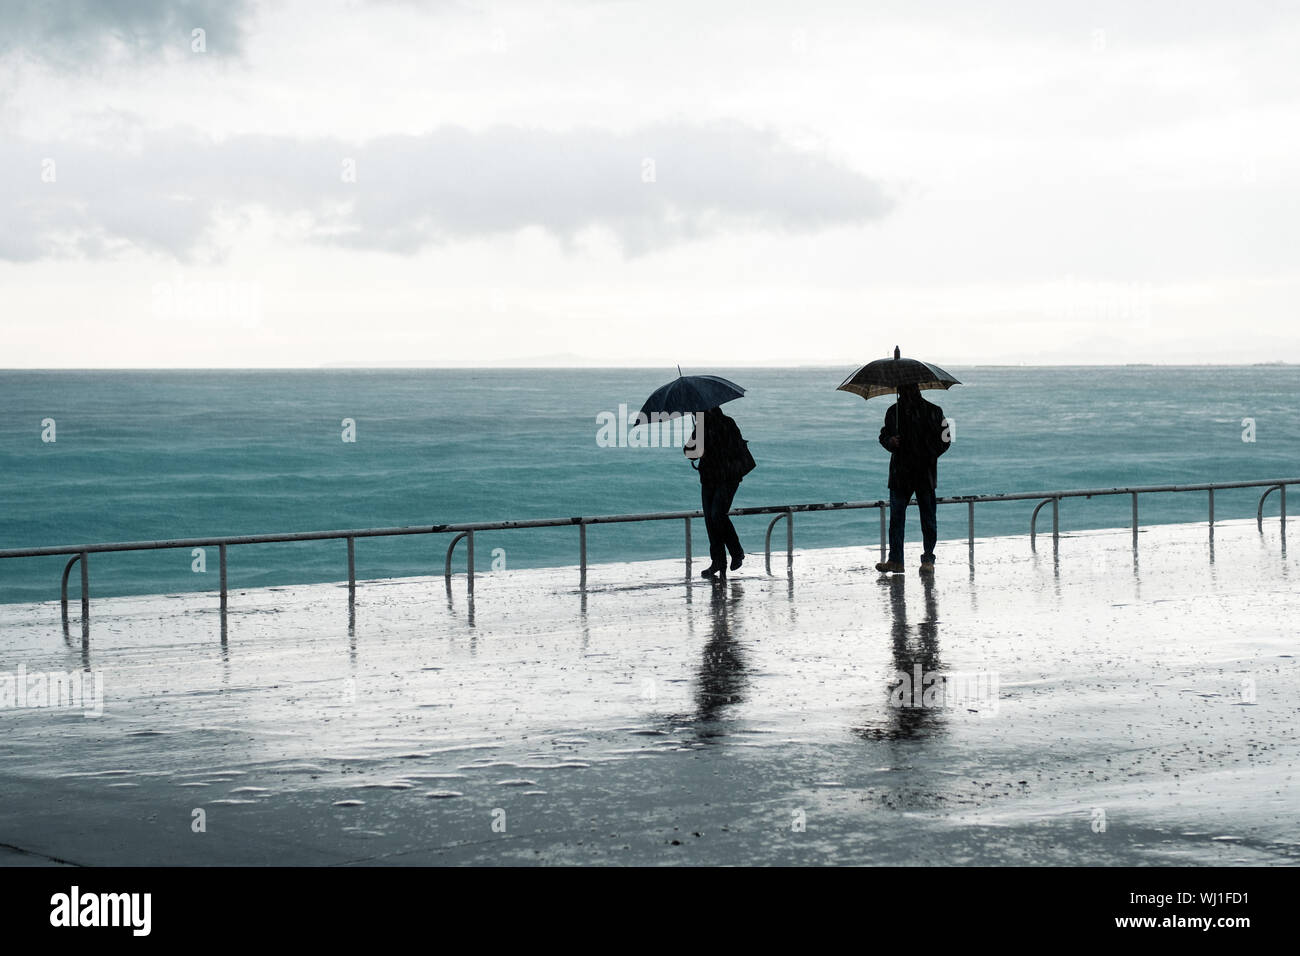 Silhouette Menschen Mit Regenschirm Zu Fuss Am Strand Gegen Himmel Wahrend Monsun Stockfotografie Alamy